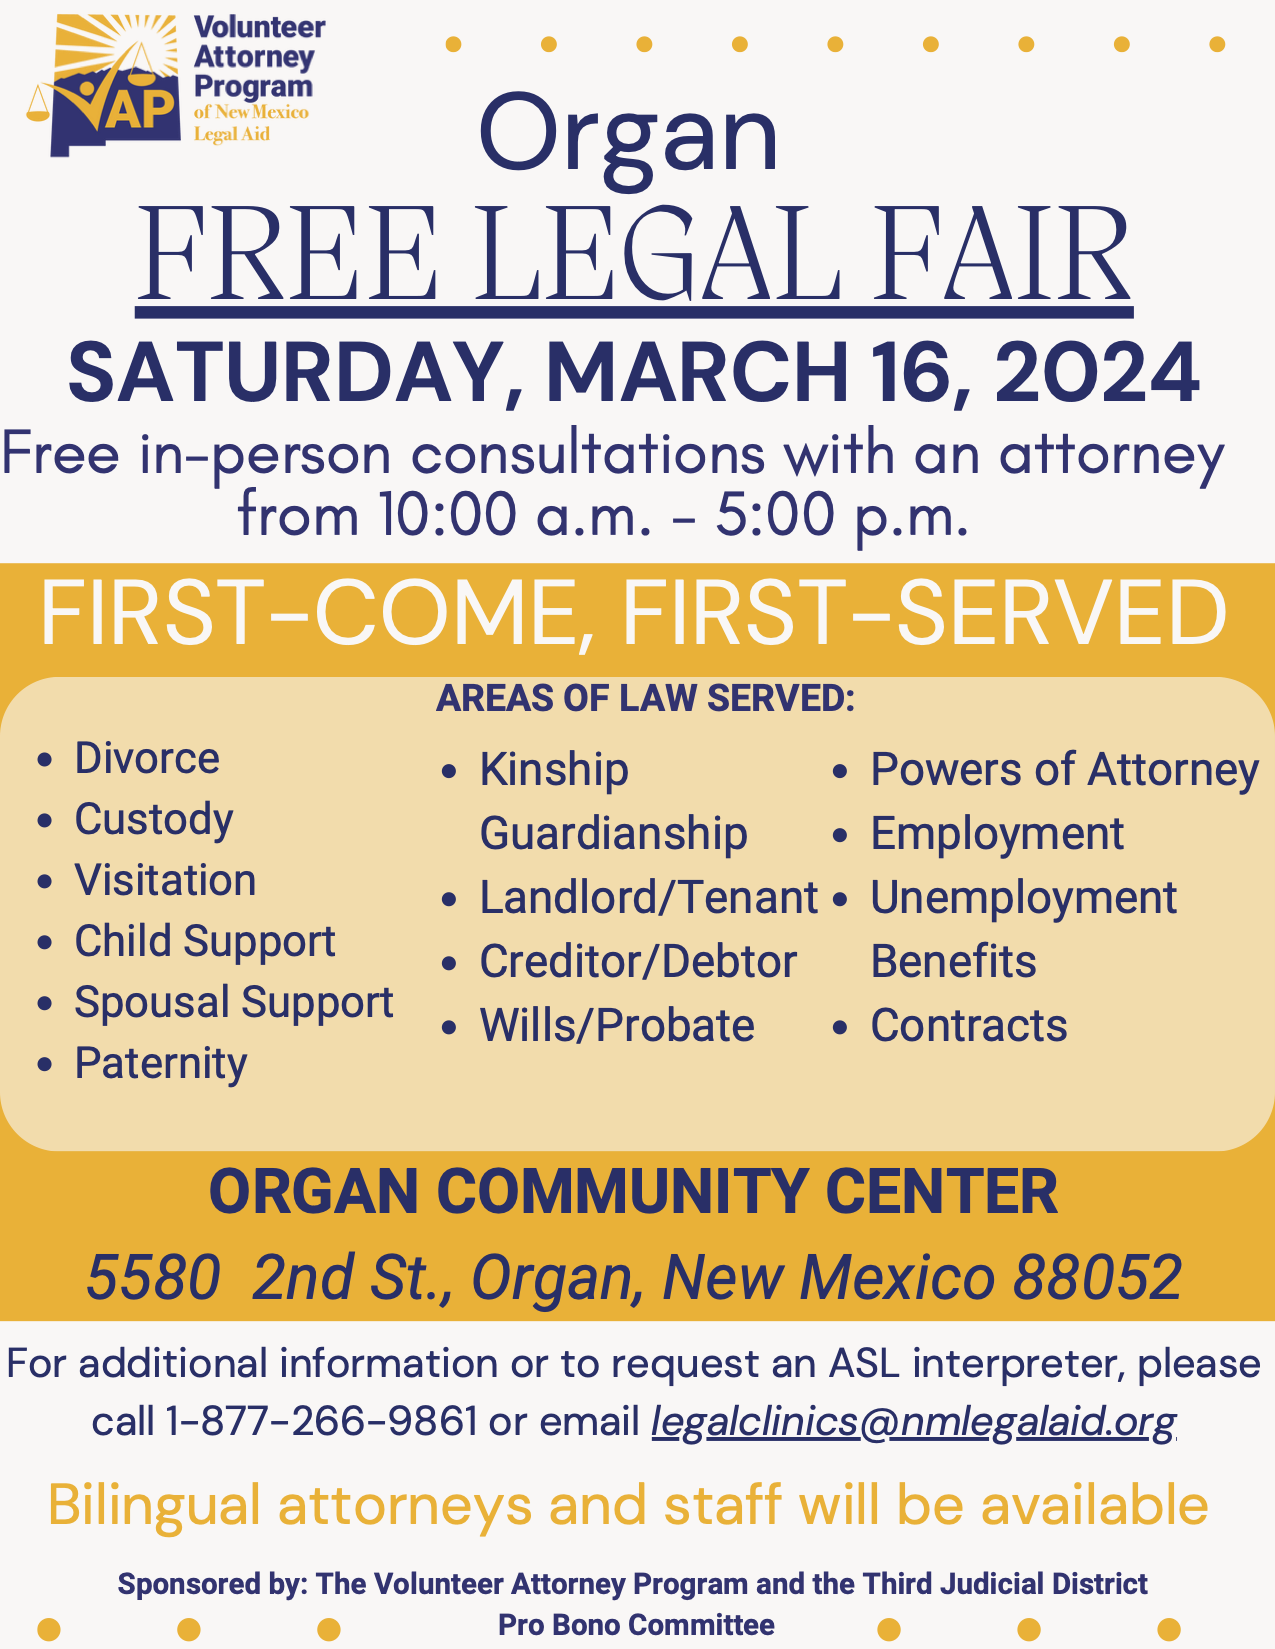 March 16, 2024 Organ Legal Fair